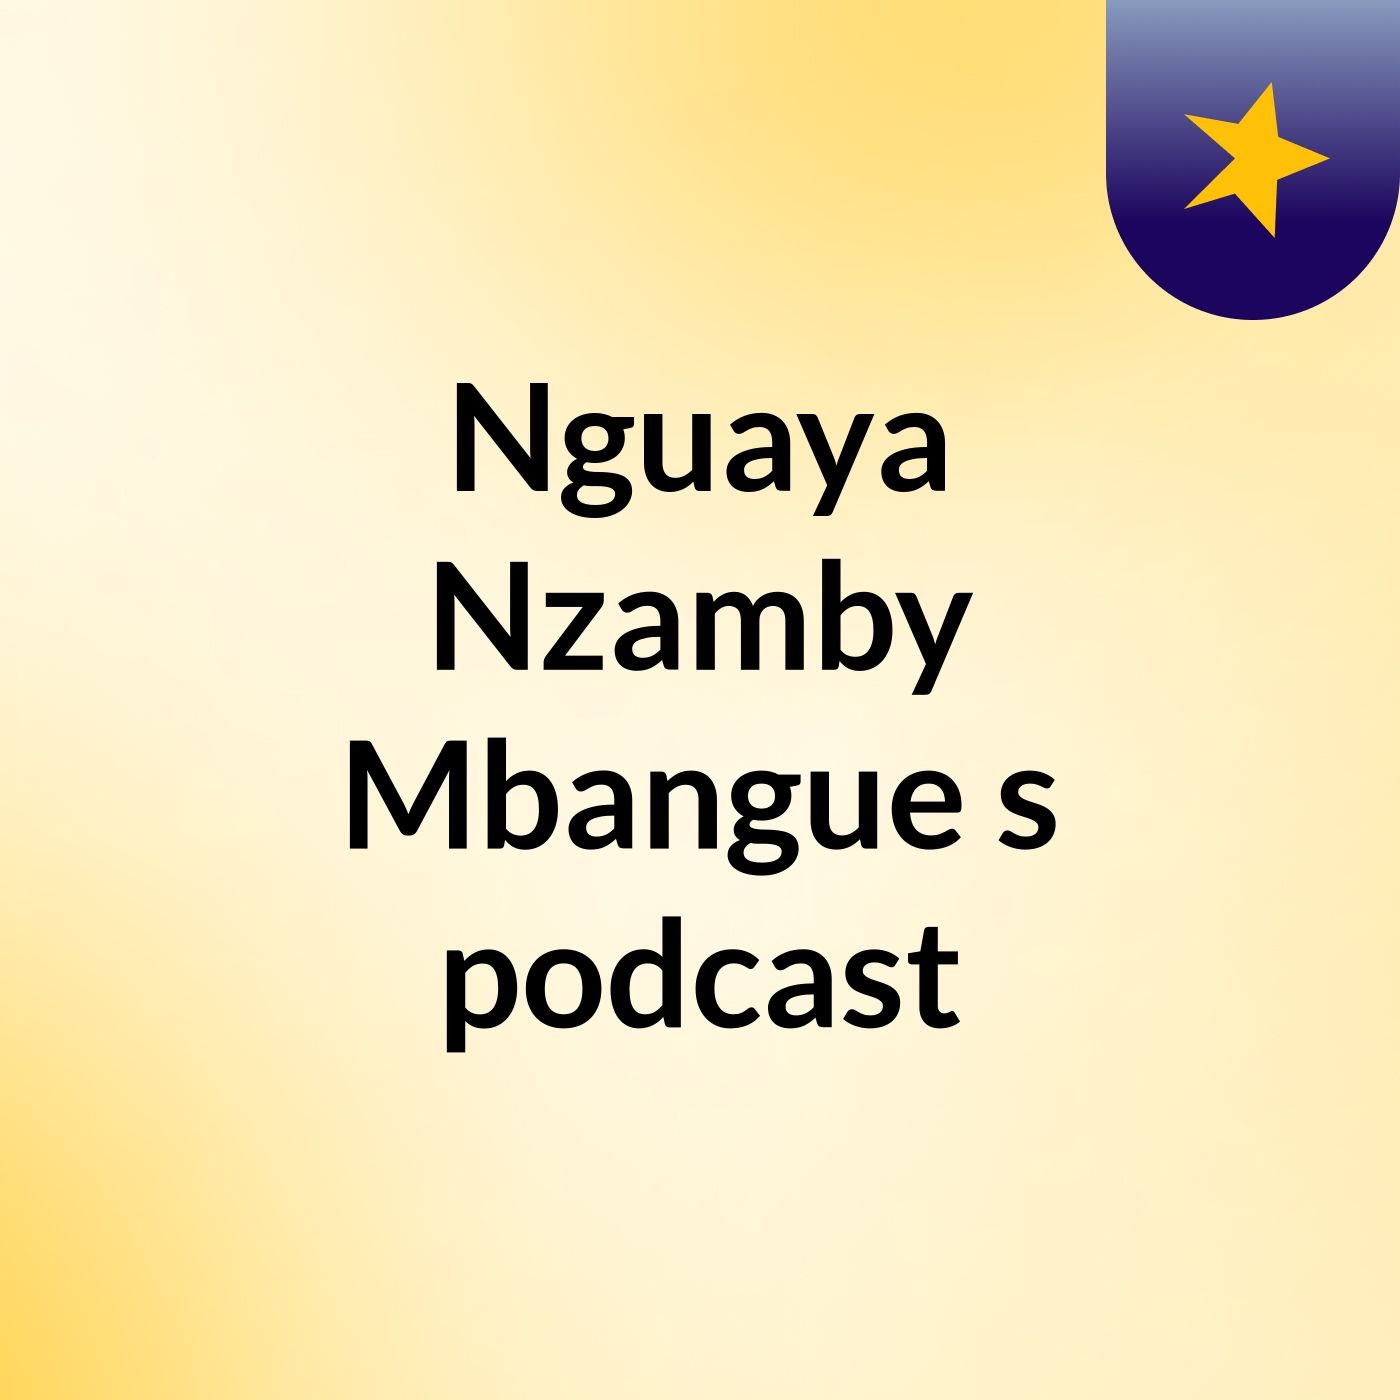 Nguaya Nzamby Mbangue's podcast